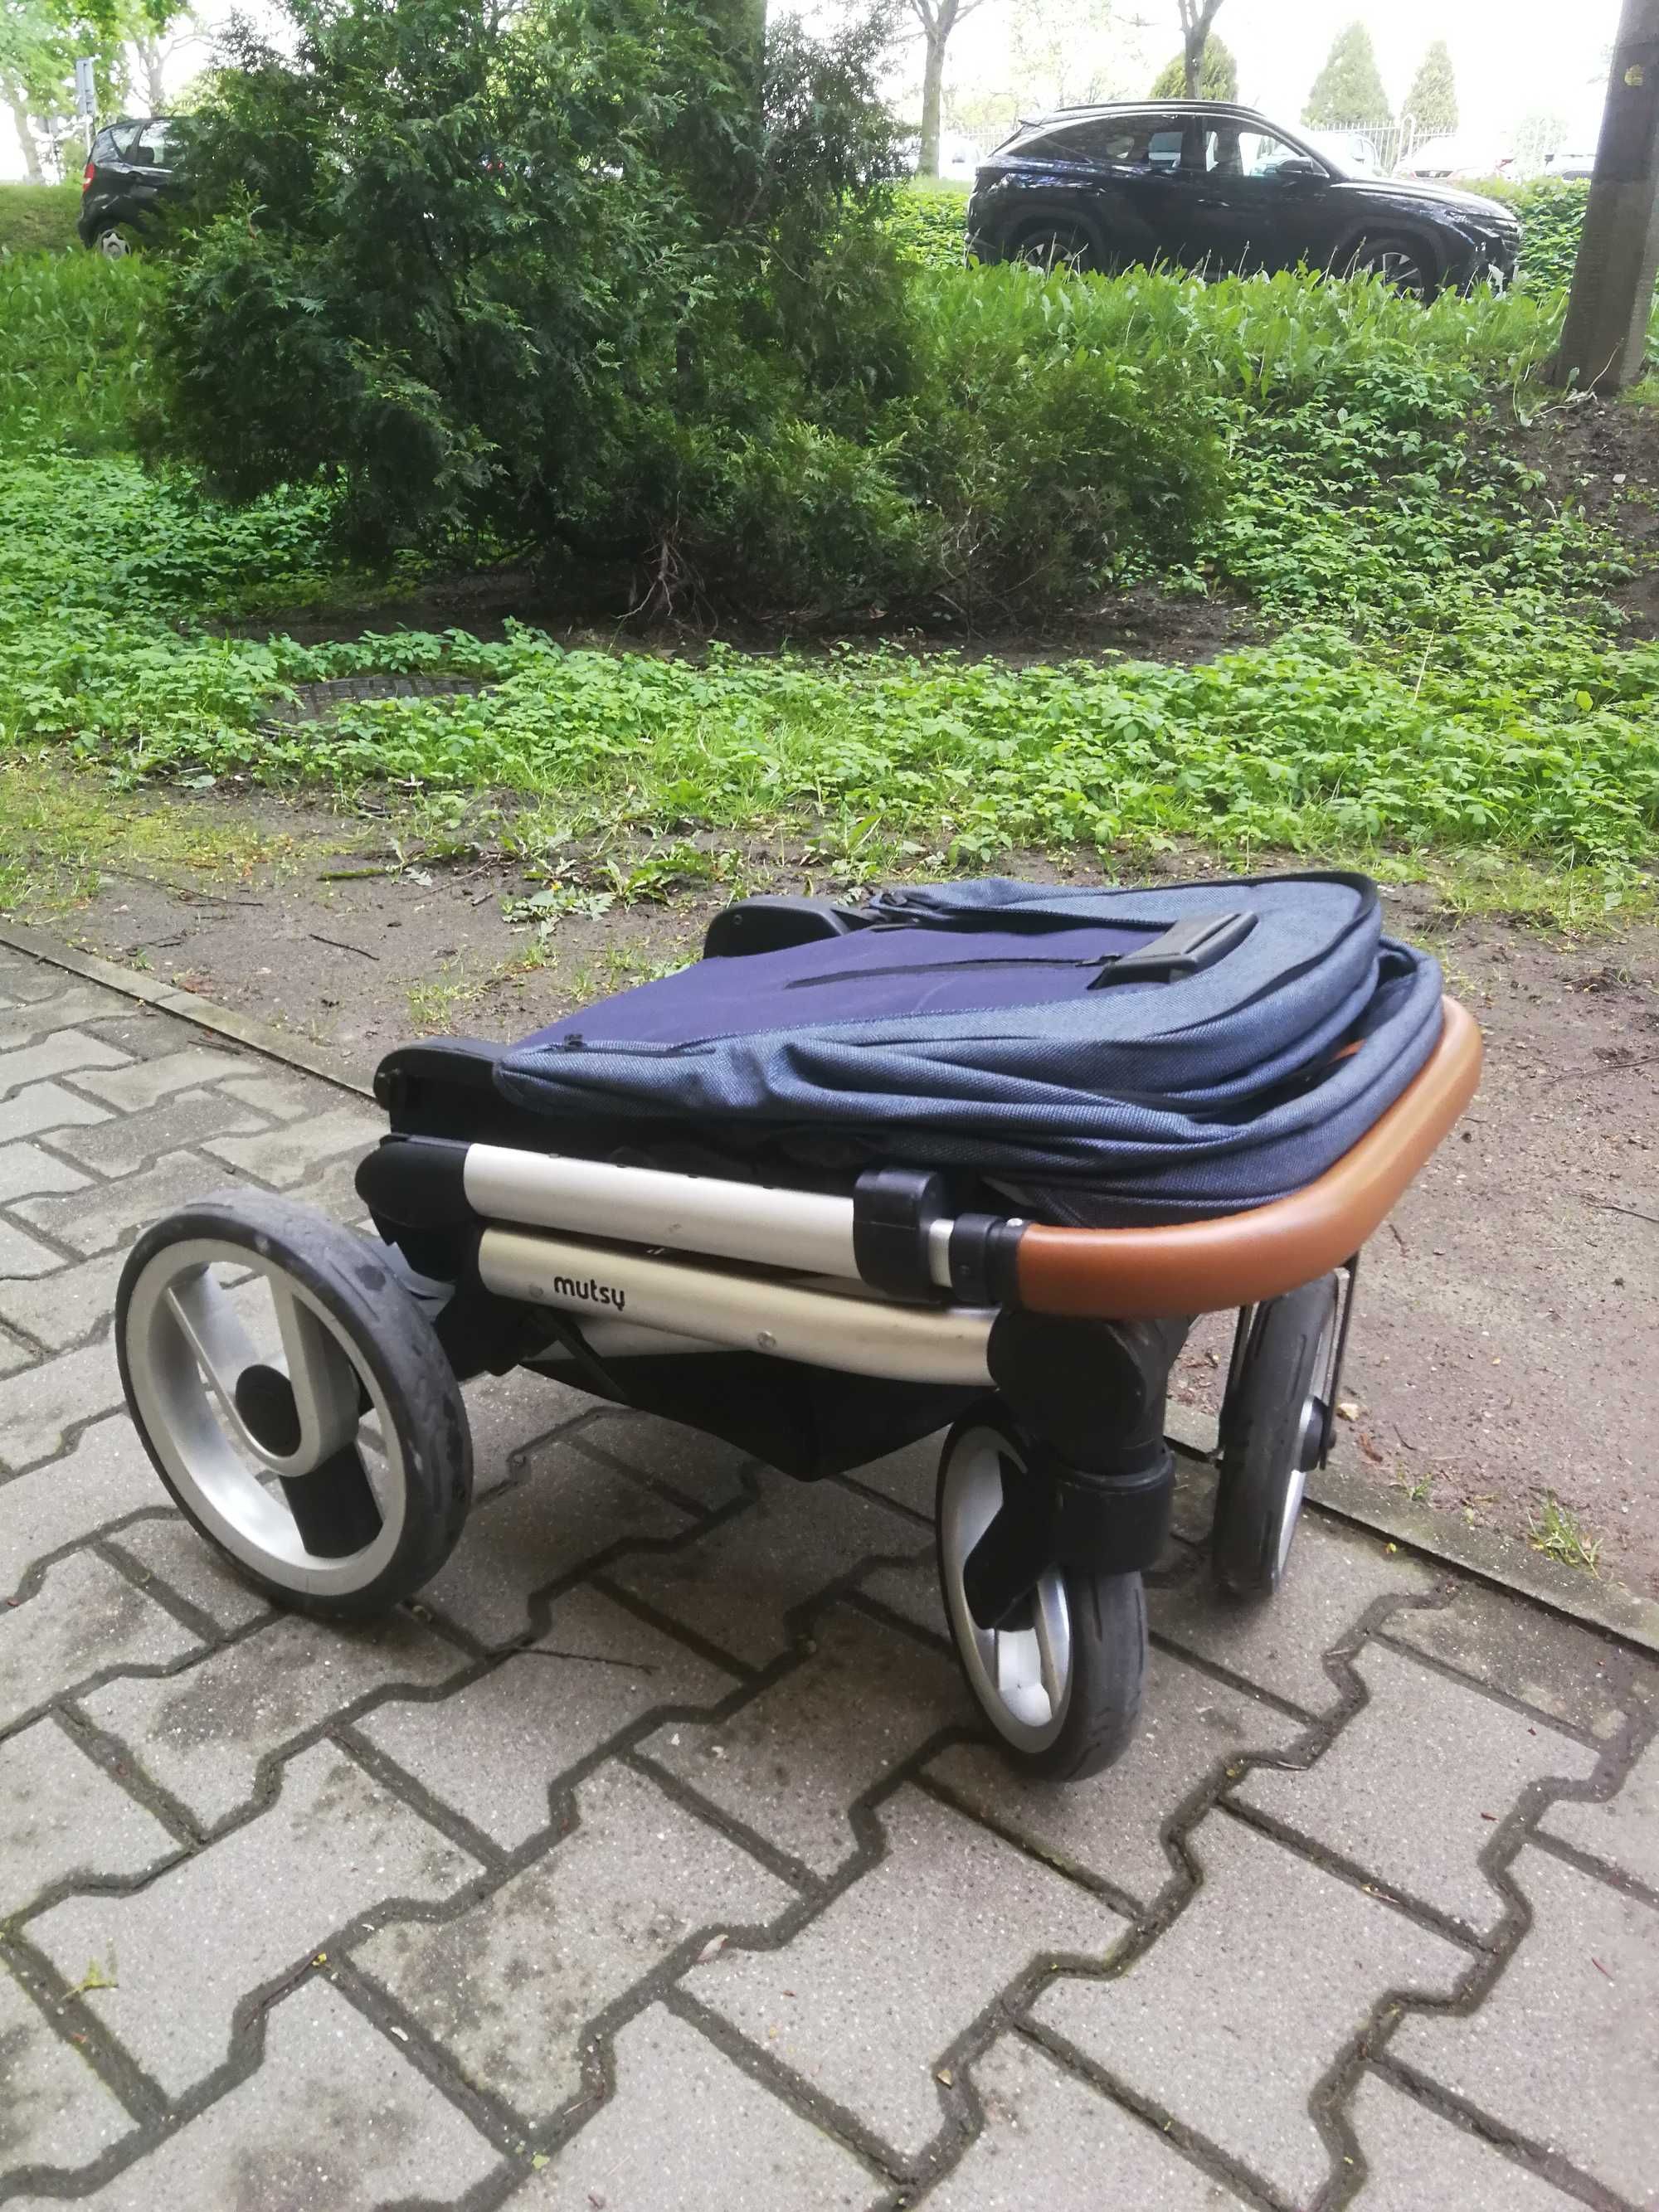 Mutsy NIO - wielofunkcyjny wózek 2w1 (gondola i spacerówka) + gratisy